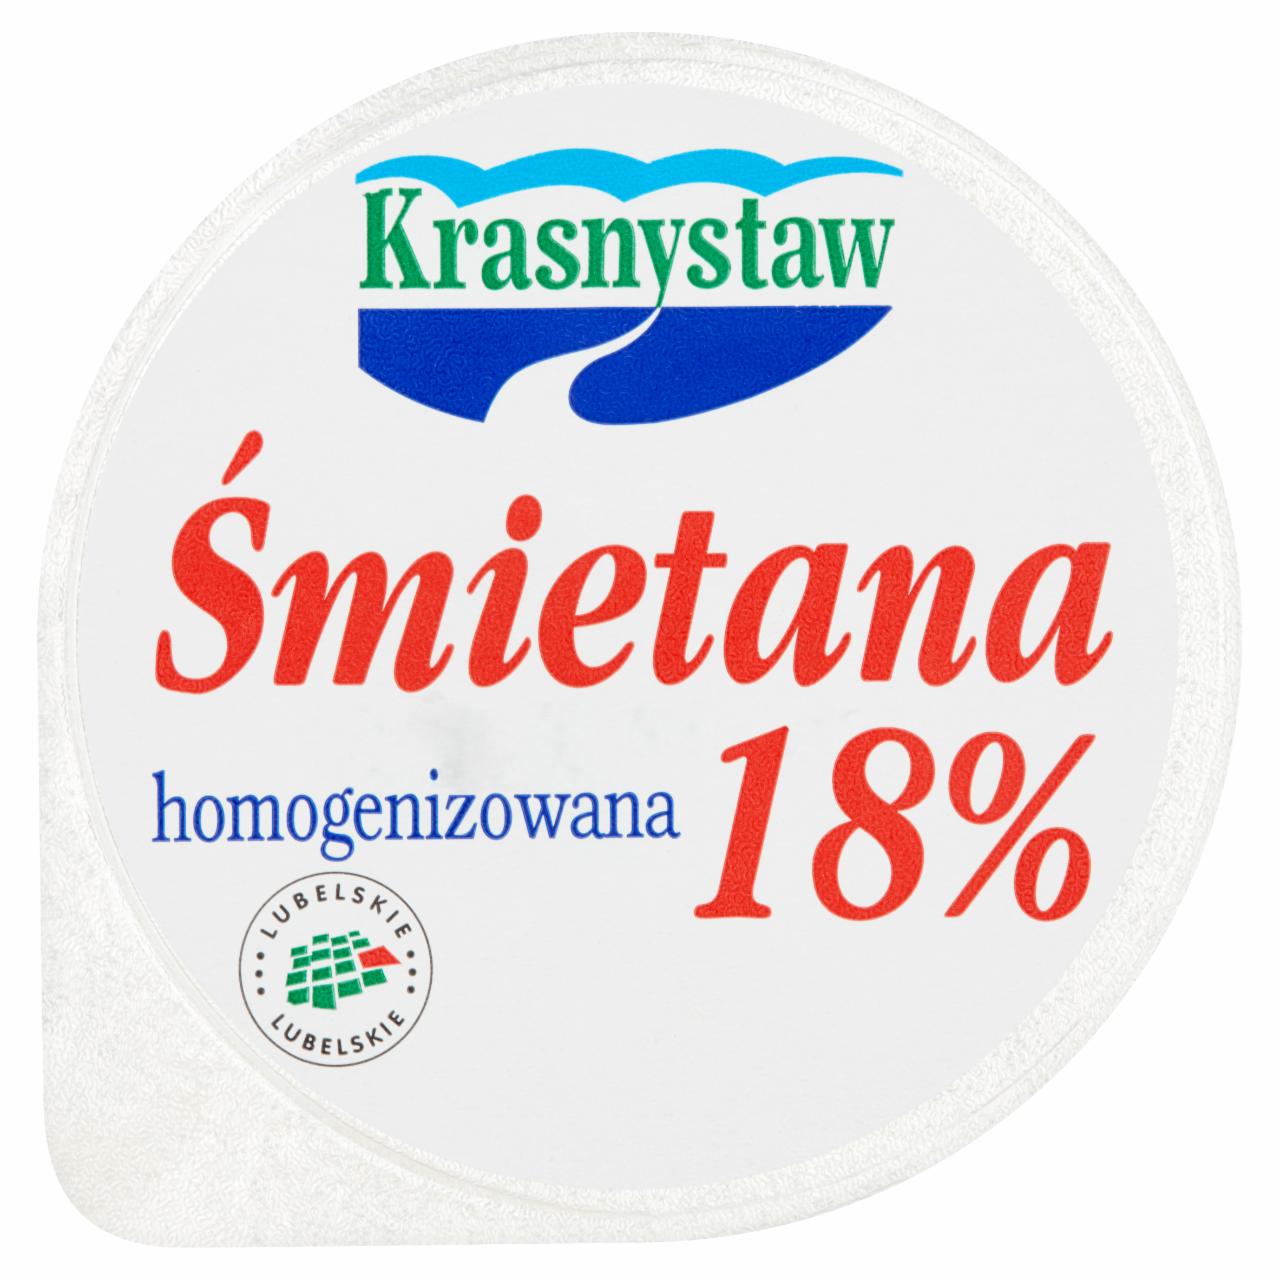 Zdjęcia - Śmietana 18% Krasnystaw